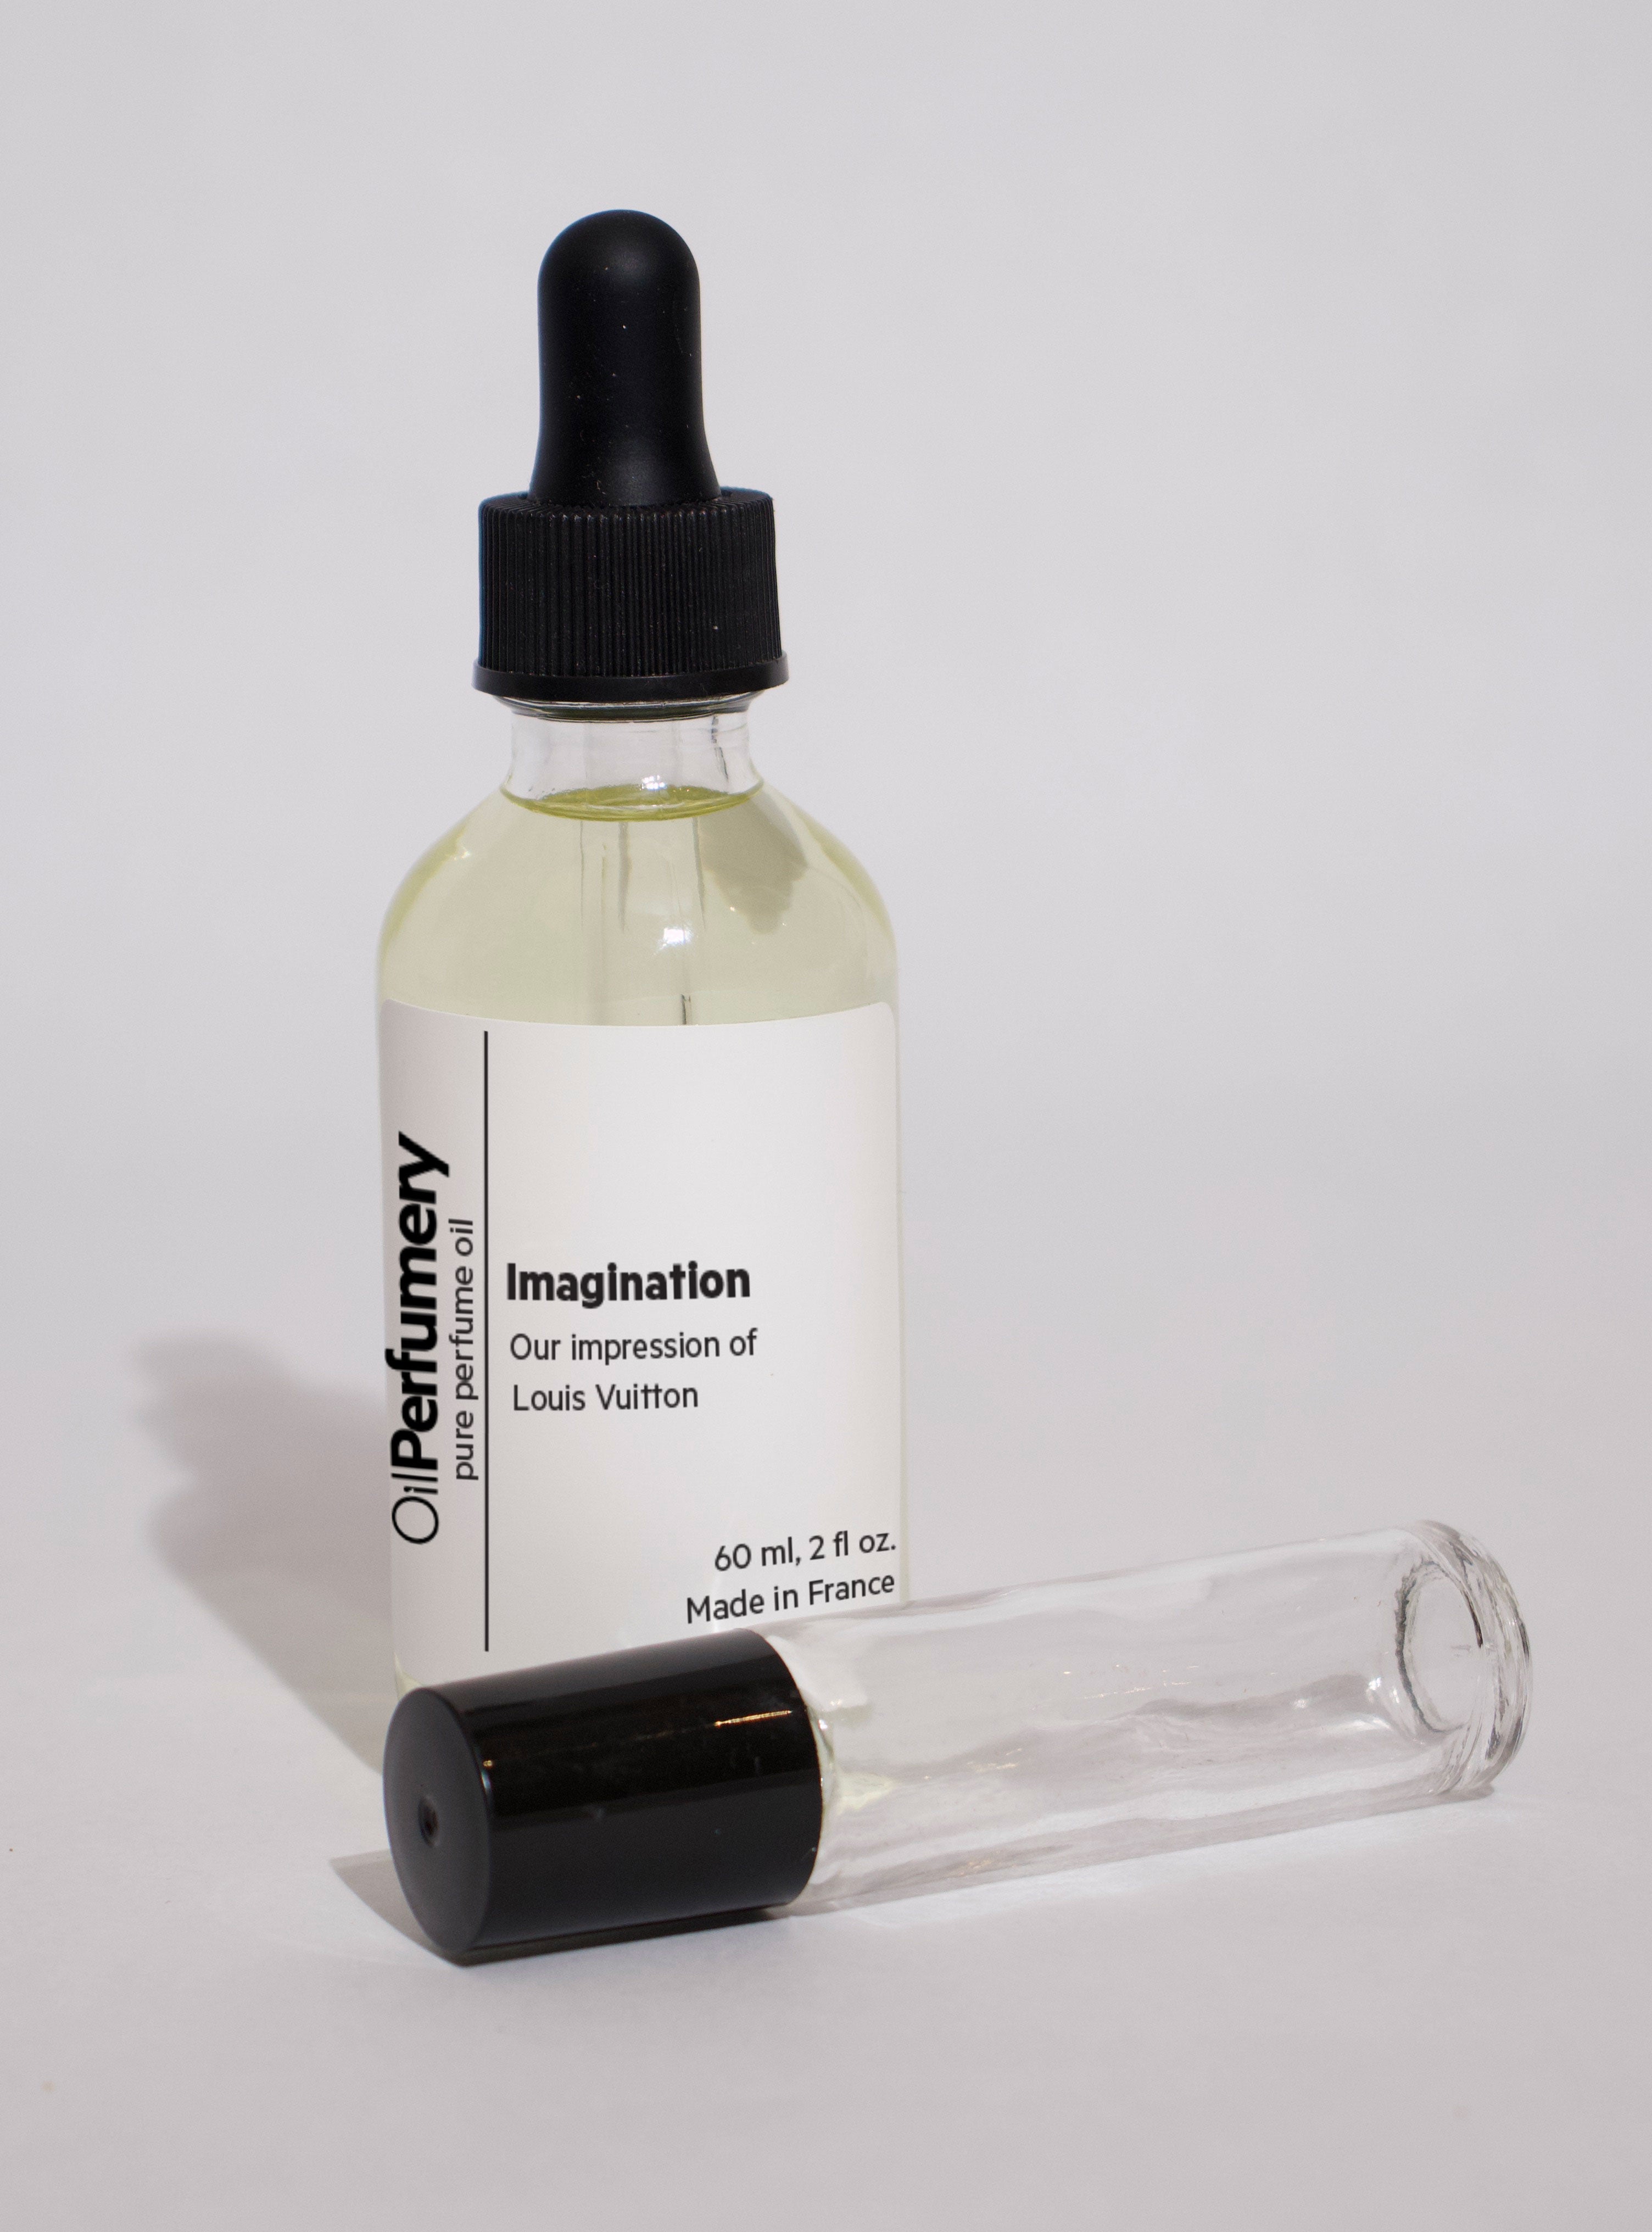 Louis Vuitton - Imagination - Oil Perfumery